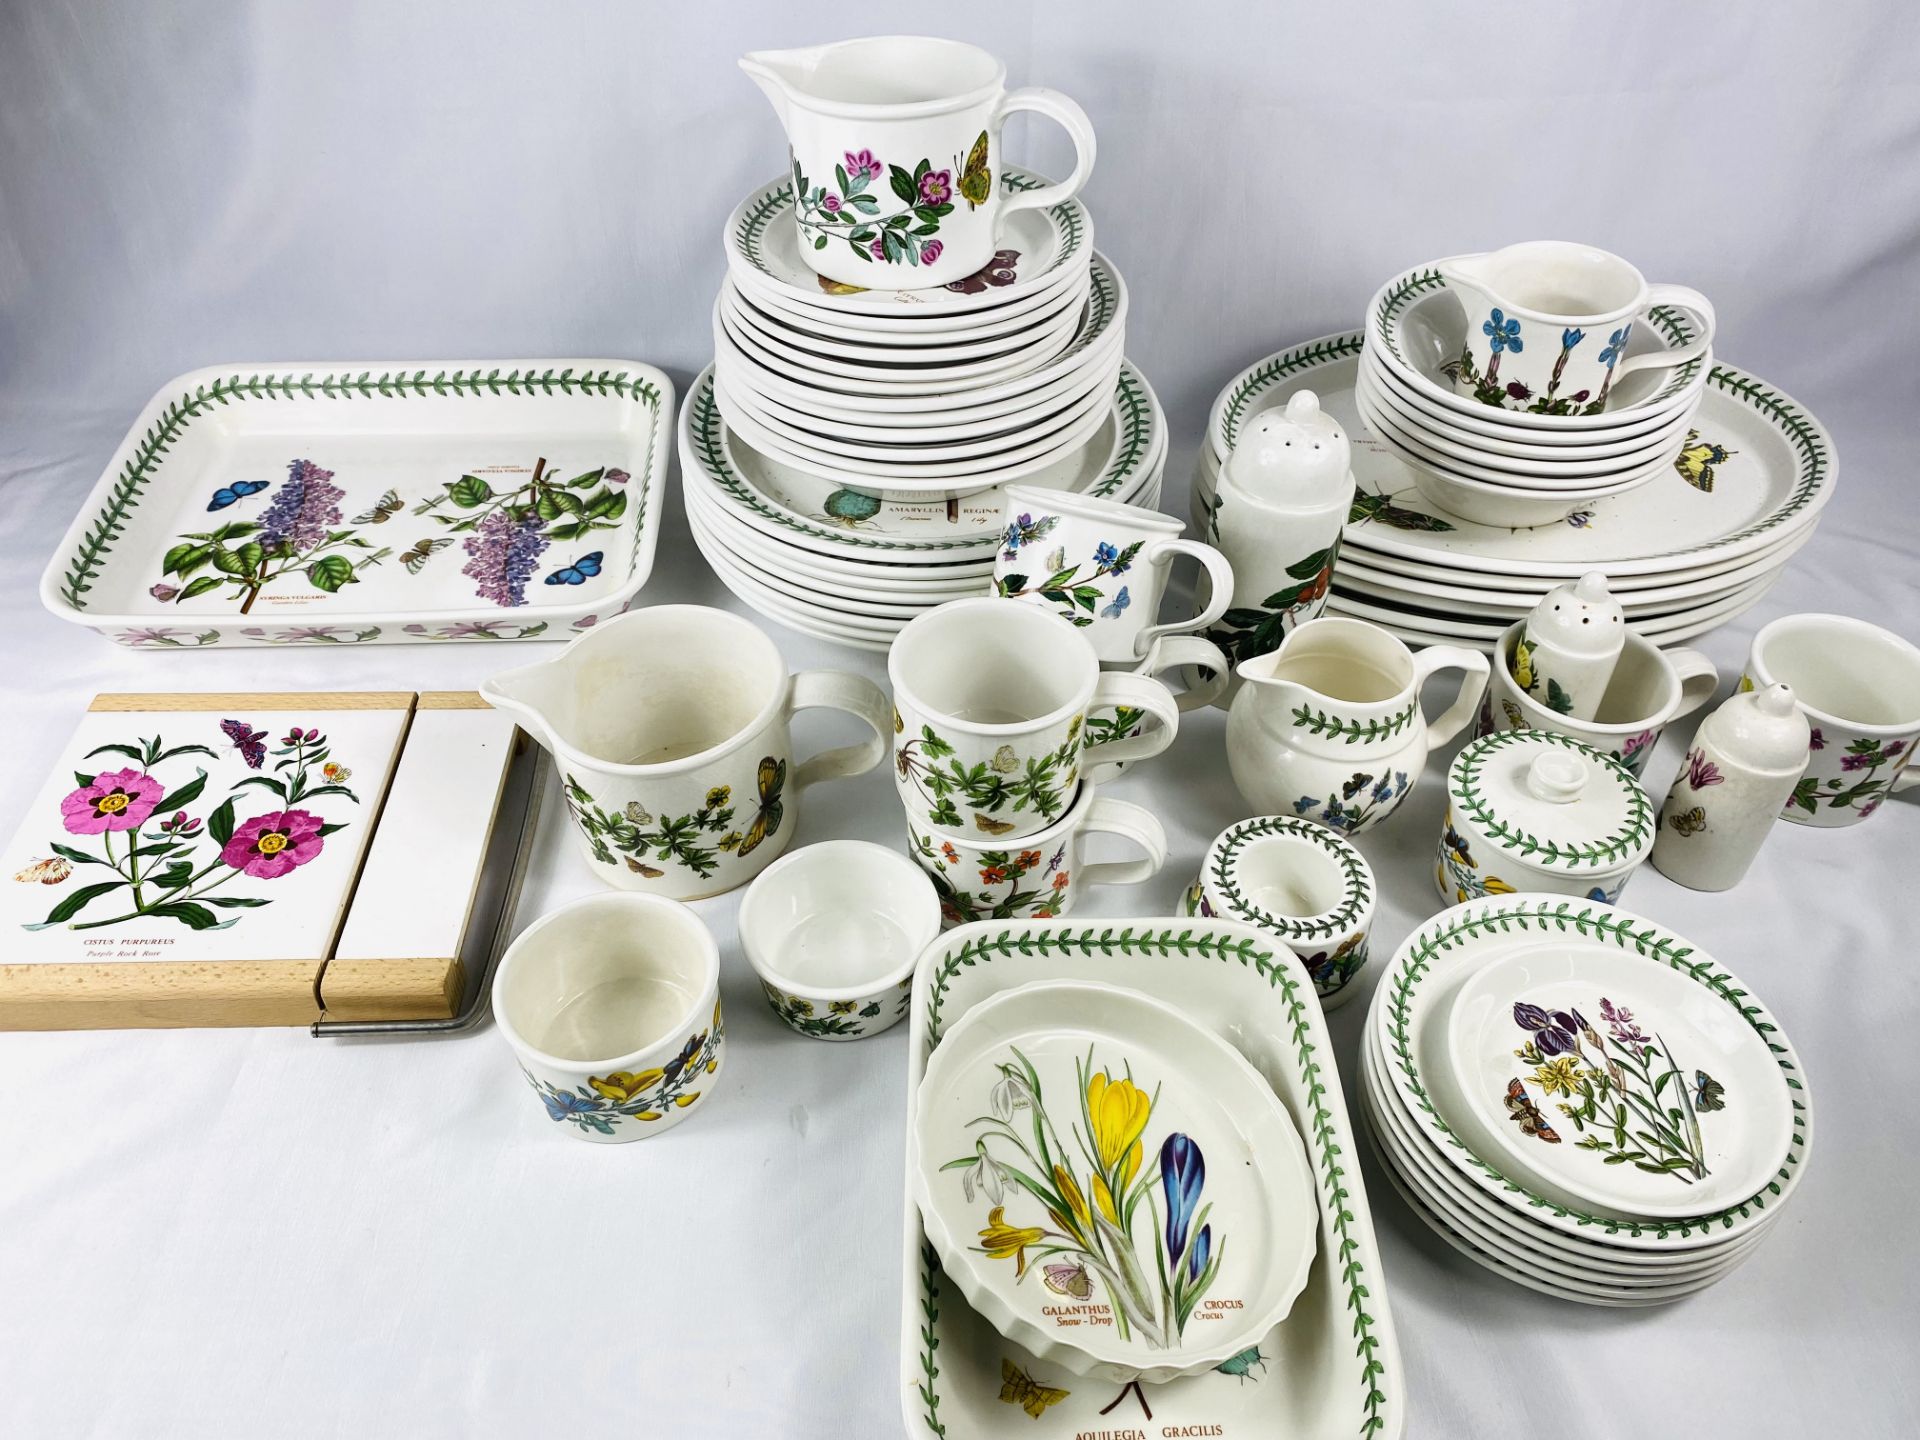 Quantity of Portmeirion Botanical Gardens tableware